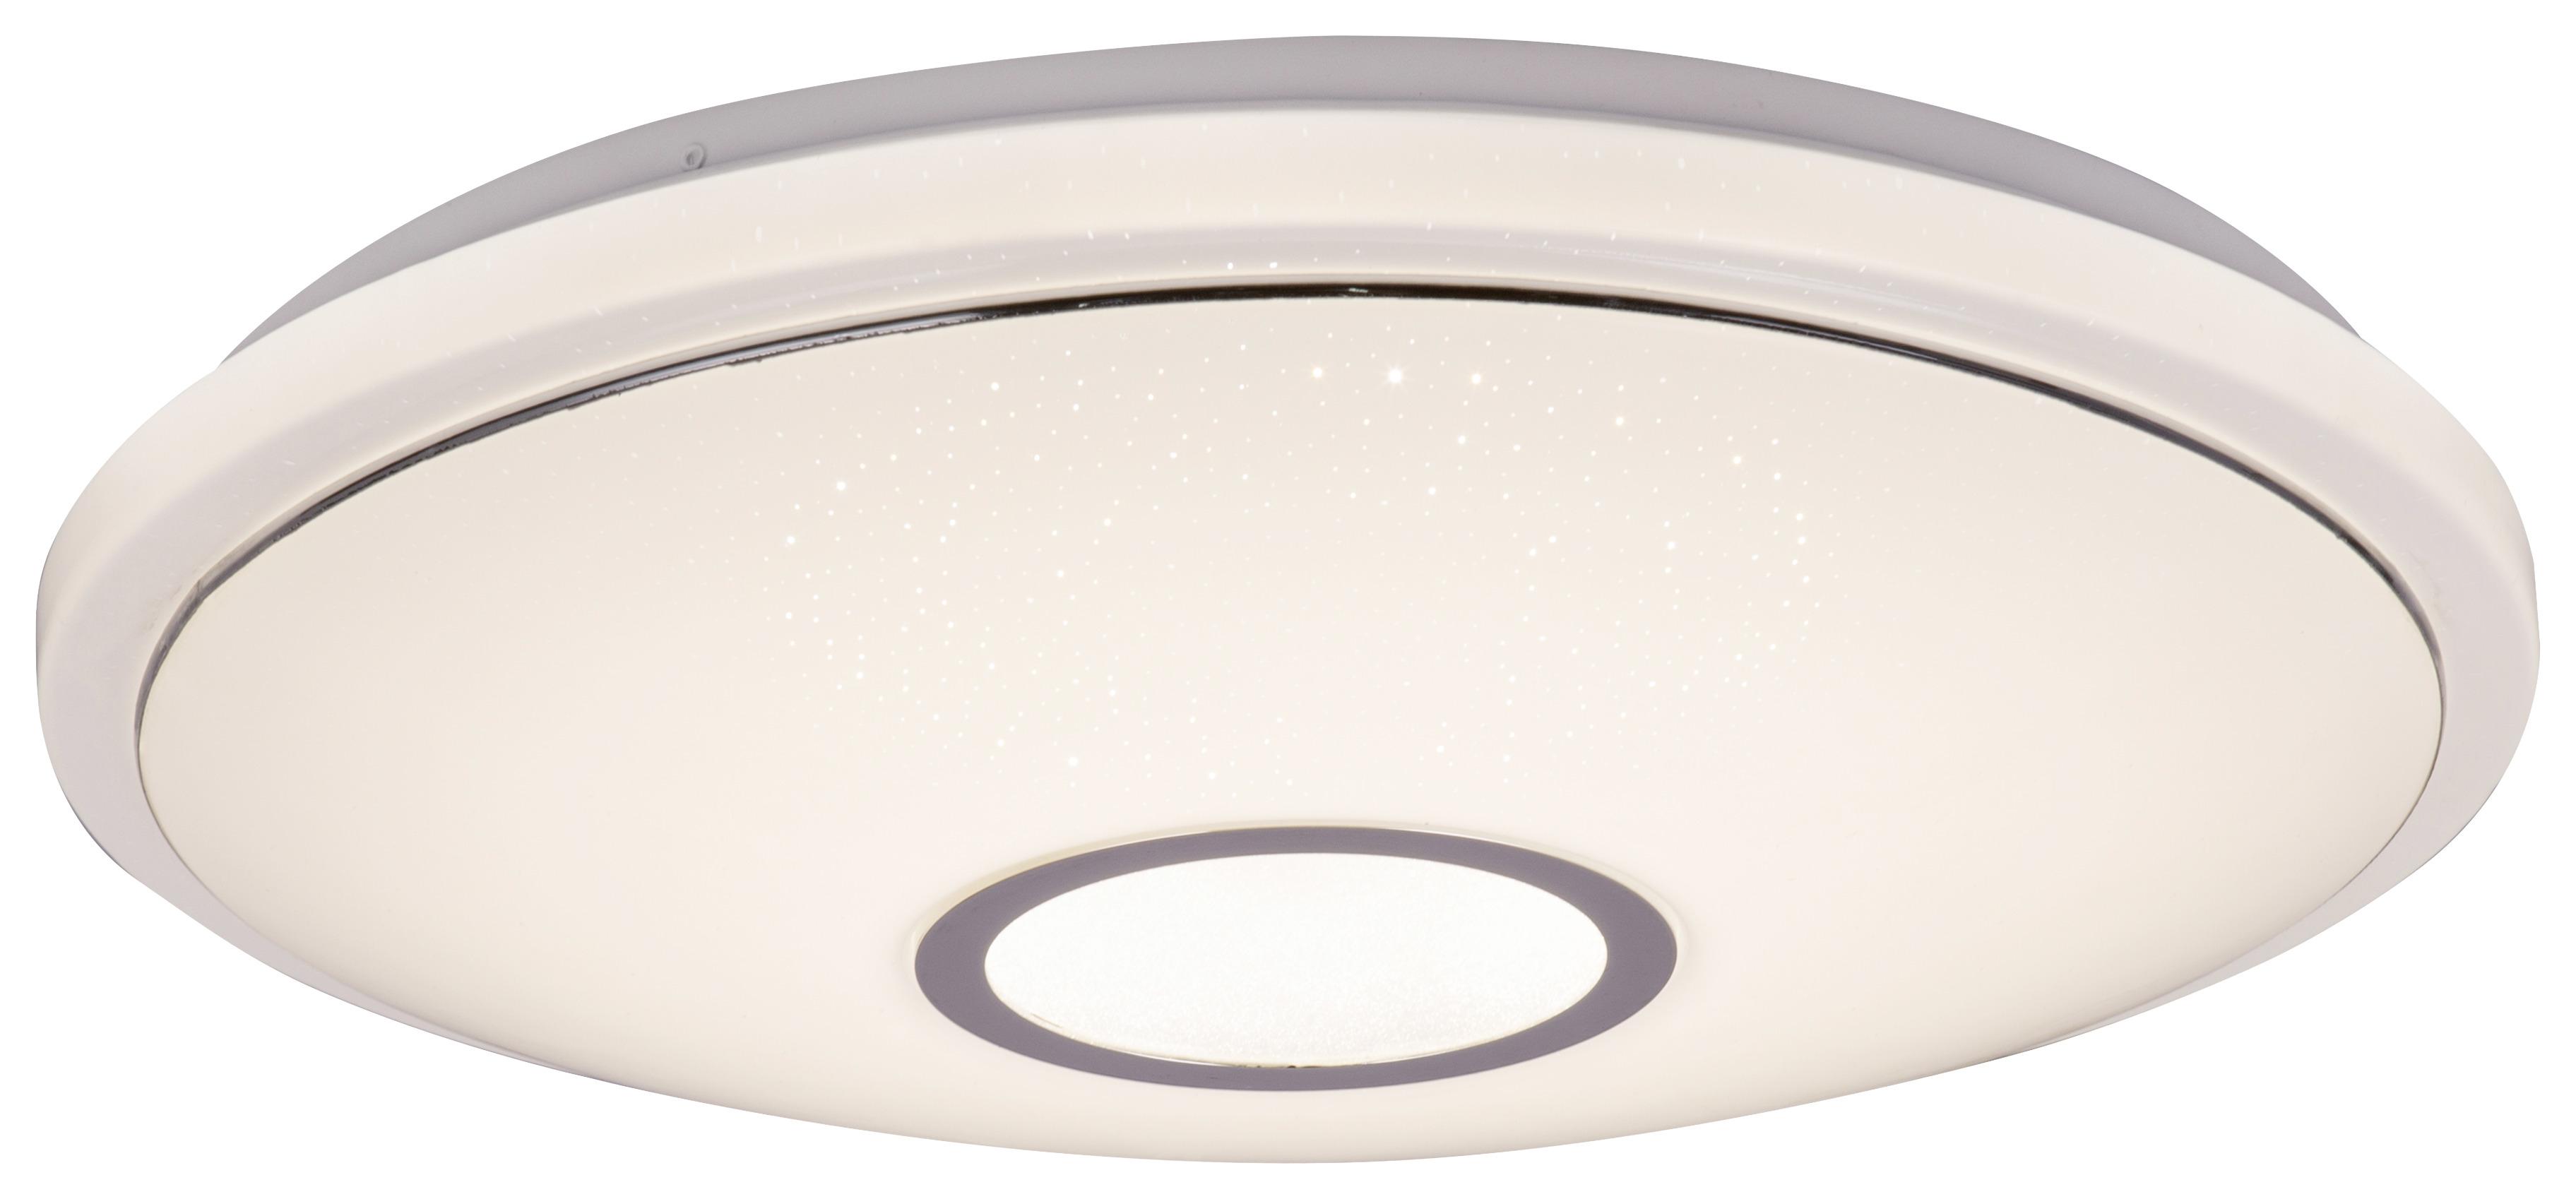 LED-Deckenleuchte Ø 50 cm mit Sternenhimmel-Effekt - Opal/Weiß, MODERN, Kunststoff/Metall (50/9,5cm)